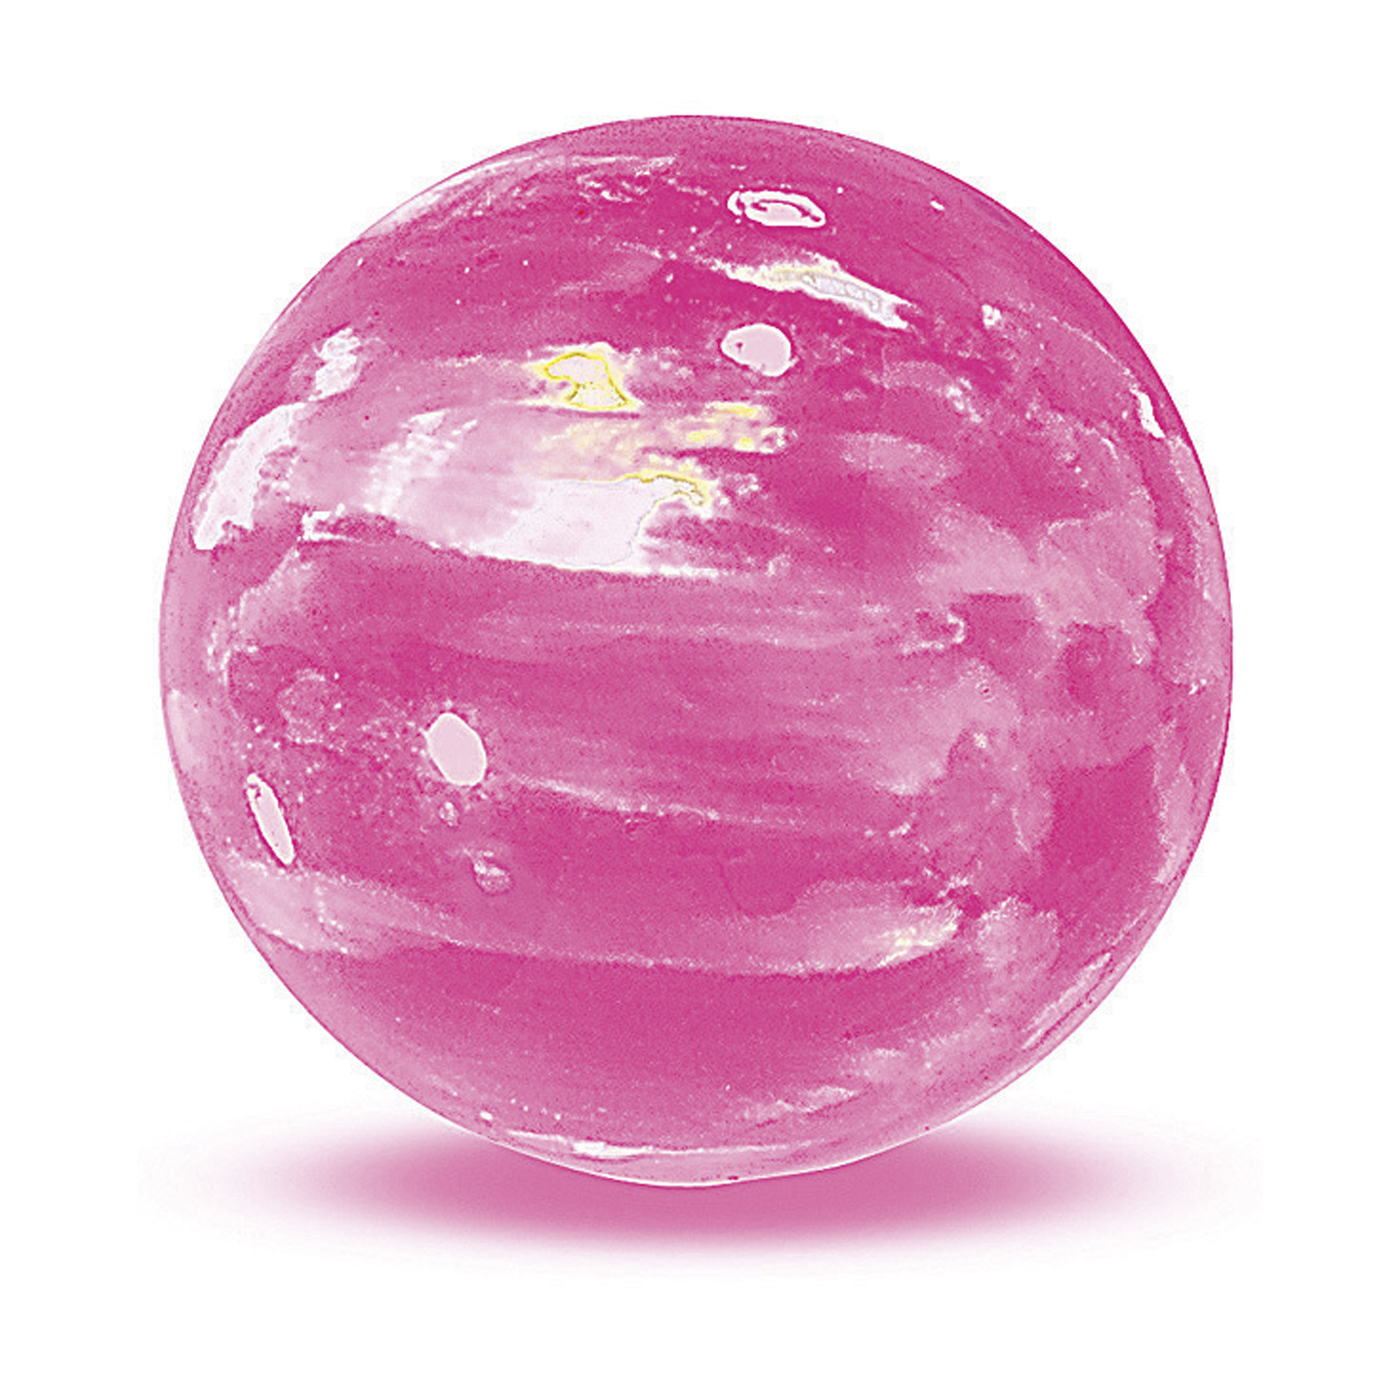 Opal Imitation Ball, Pink, ø 10 mm, Drilled Through - 1 piece